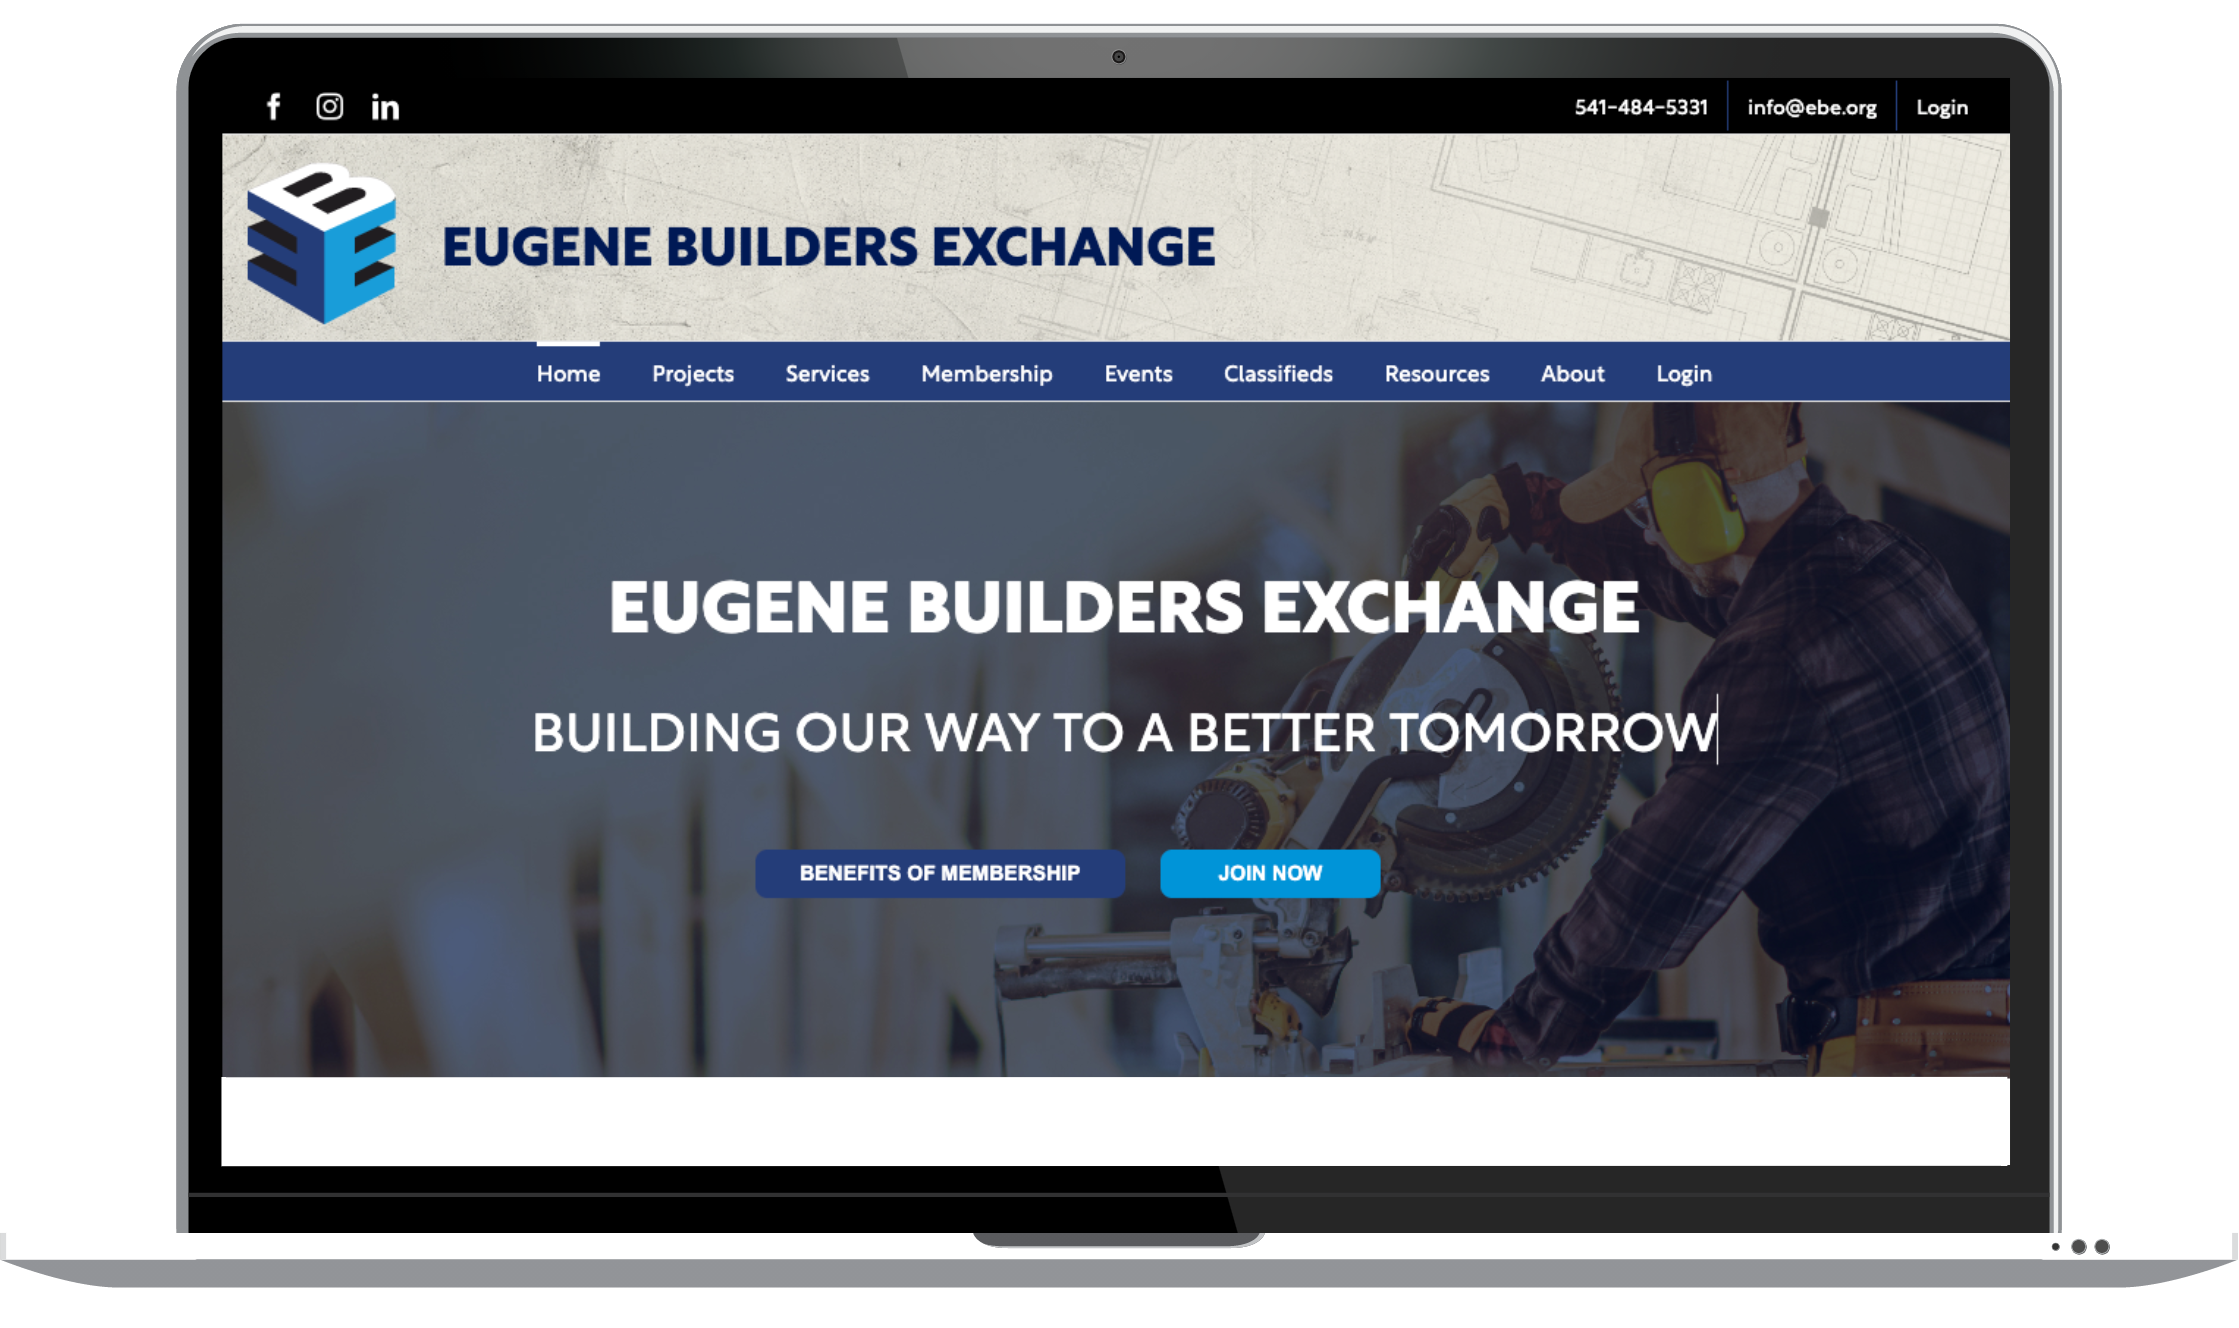 Eugene Builders Exchange